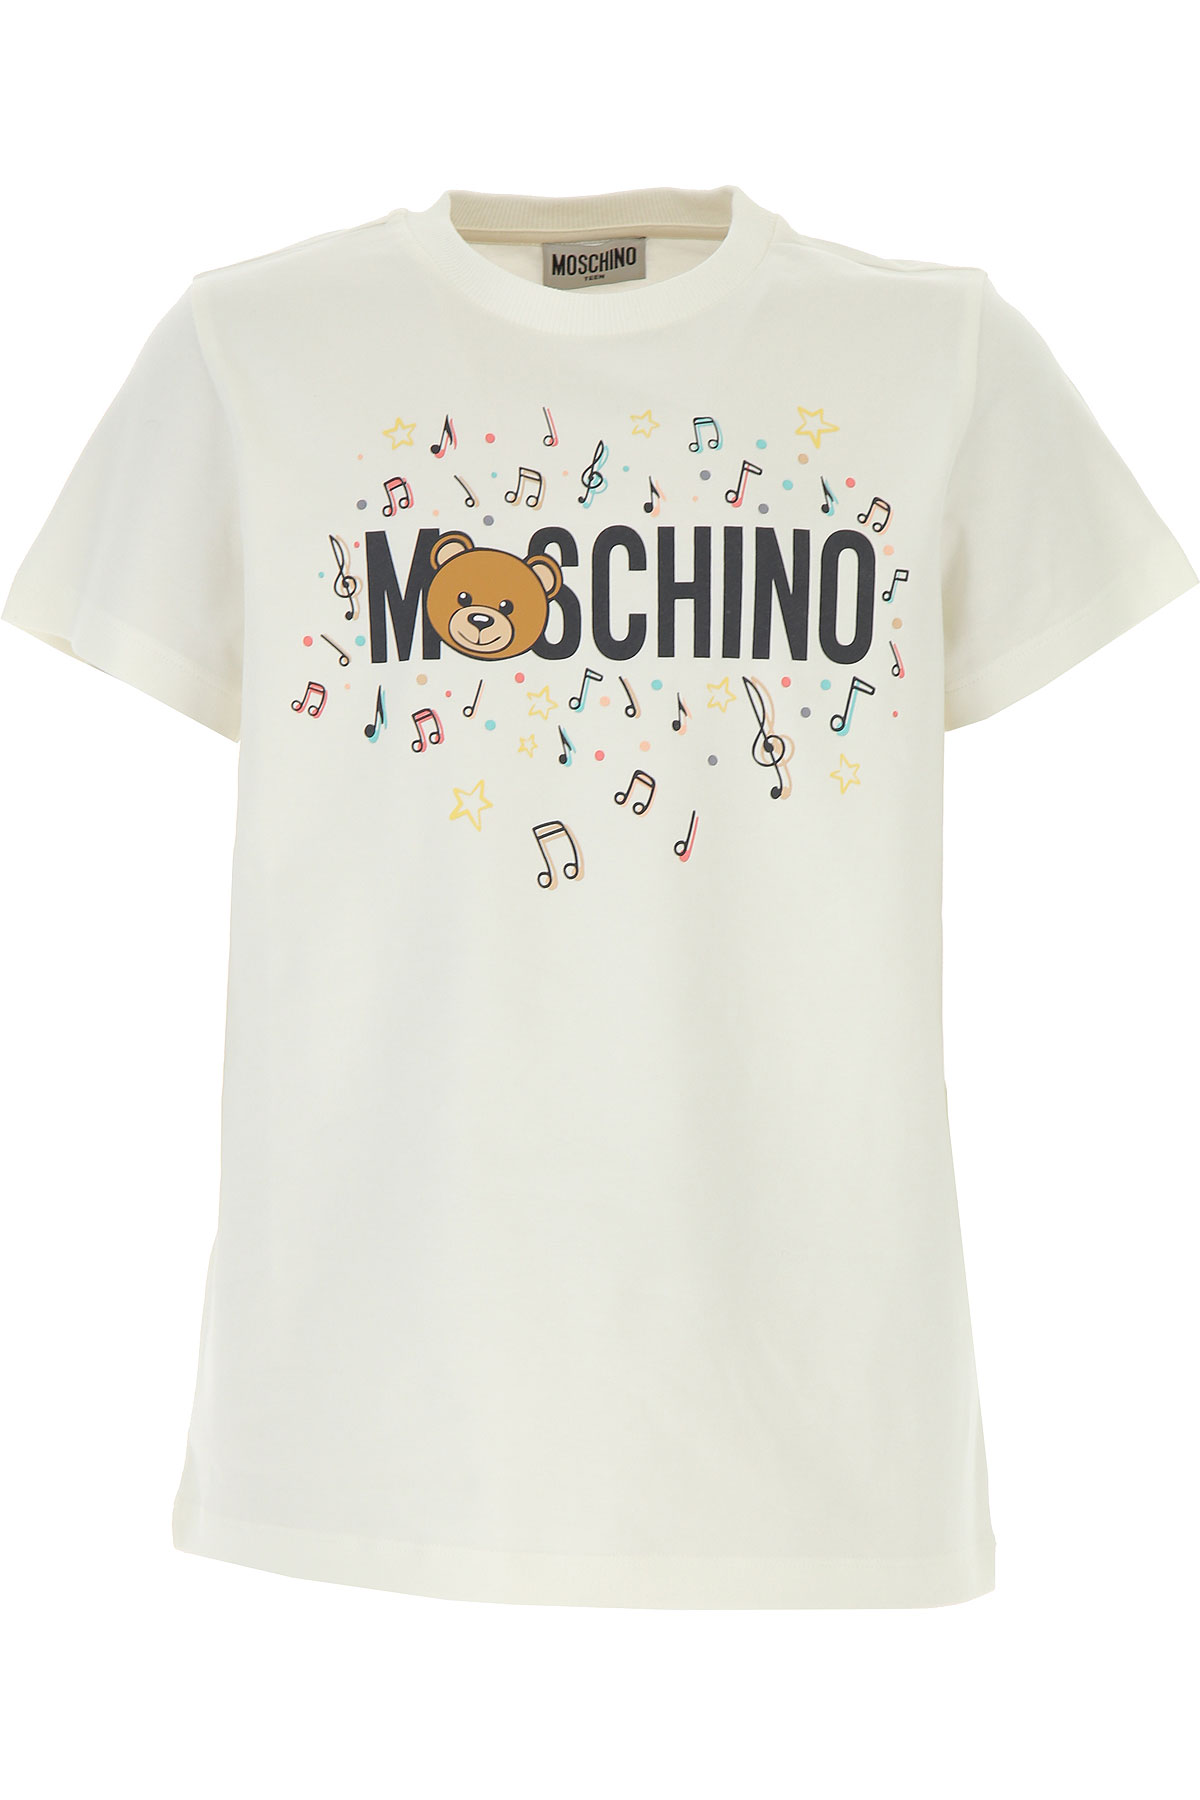 Moschino Kinder T-Shirt für Mädchen Günstig im Sale, Weiss, Baumwolle, 2017, 10Y 12Y 14Y 4Y 5Y 8Y